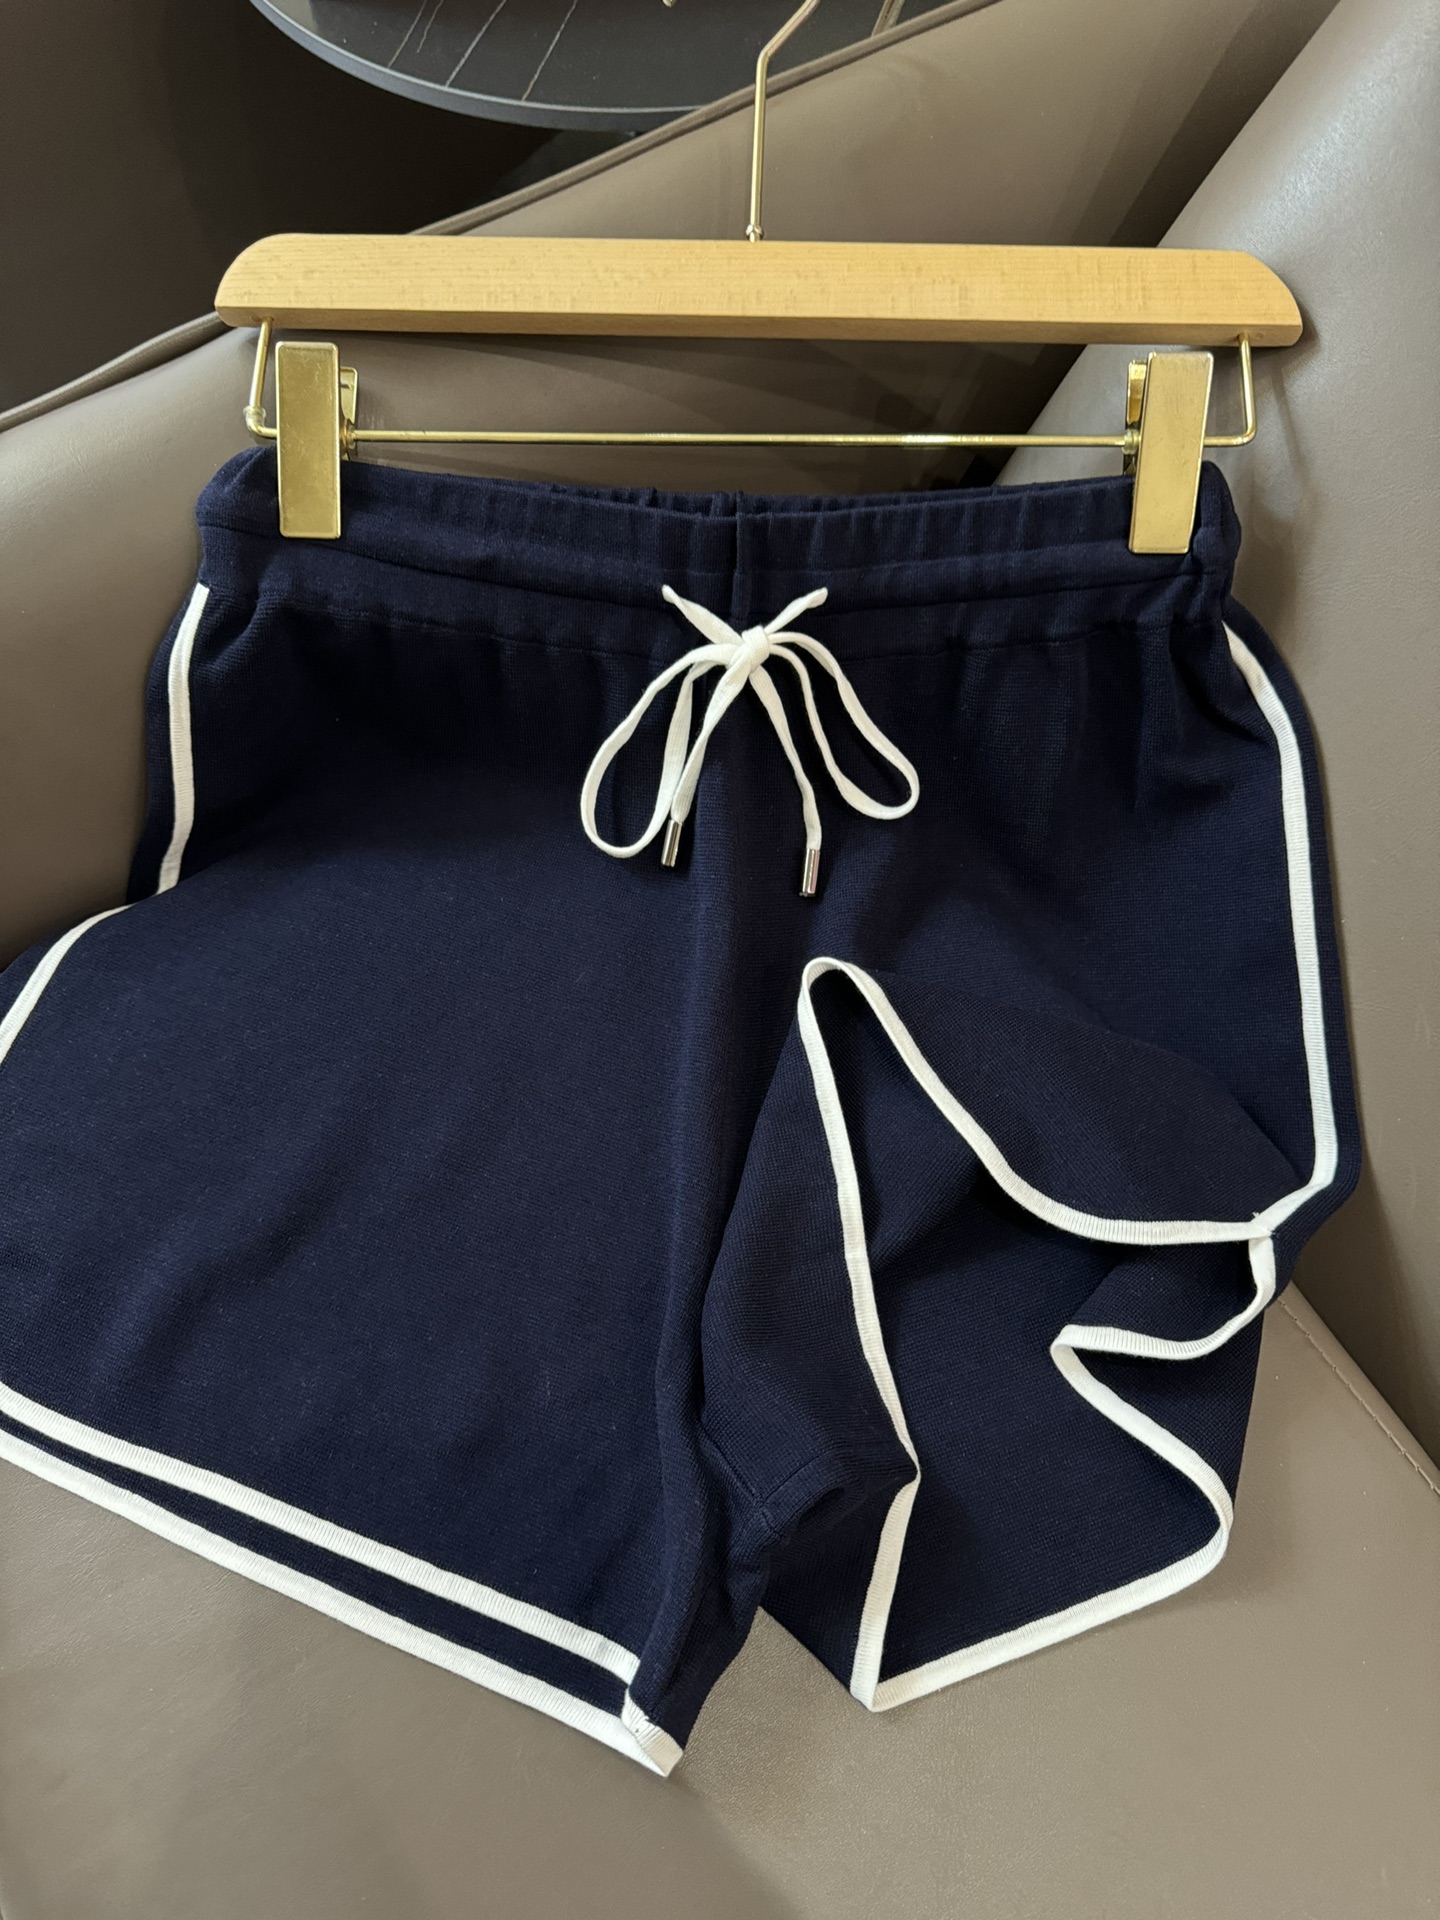 FBC008#新款套装BC棒球服系列天丝短袖针织上衣天丝针织短裤套装白色蓝色浅灰色SML